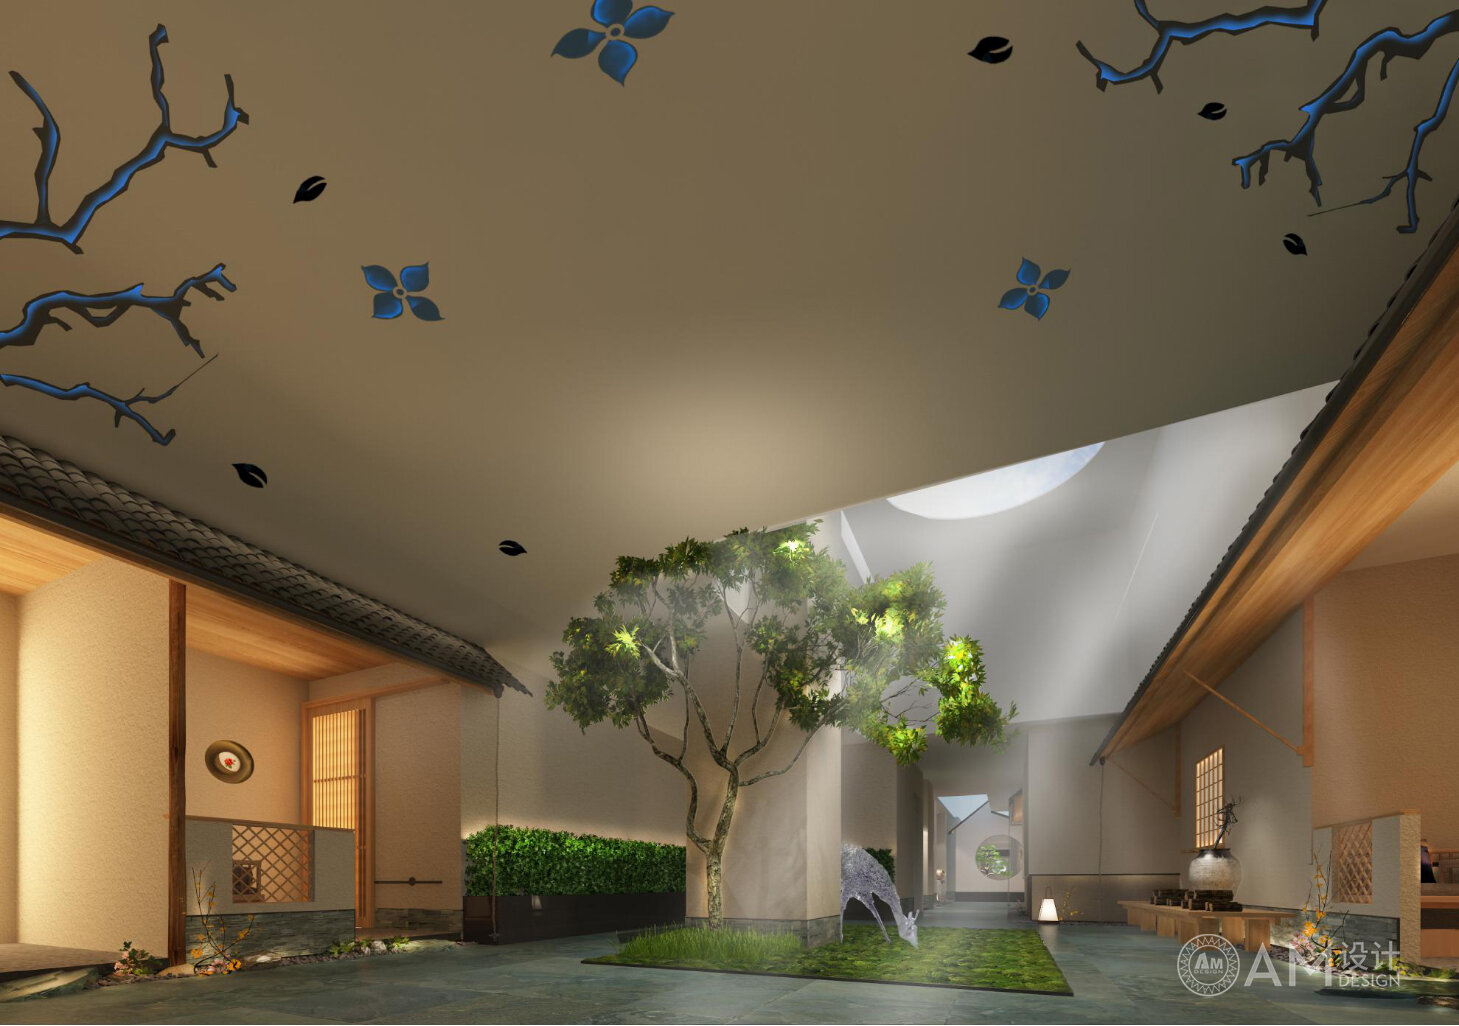 AM DESIGN | Xi'an Four Seasons Flower City SPA Club Atrium Design